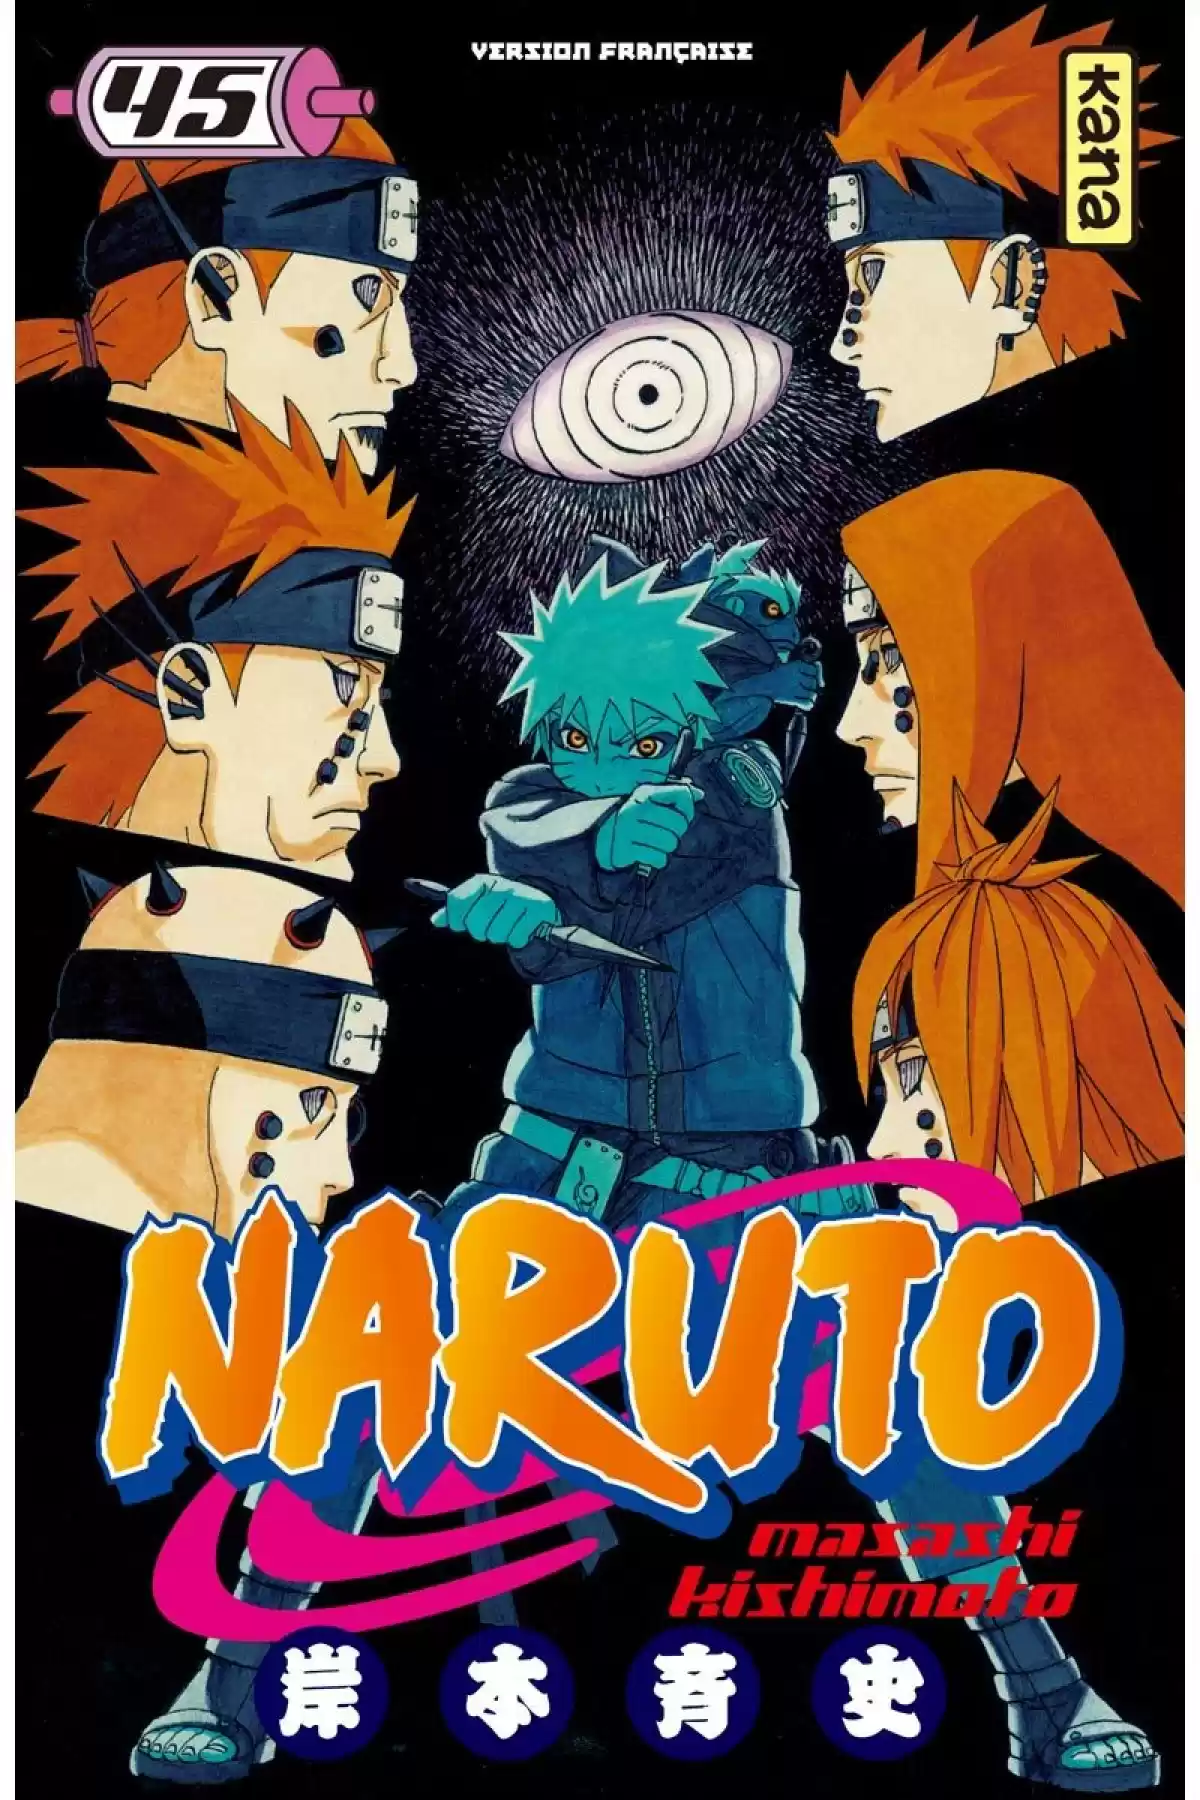 Naruto Volume 45 page 1